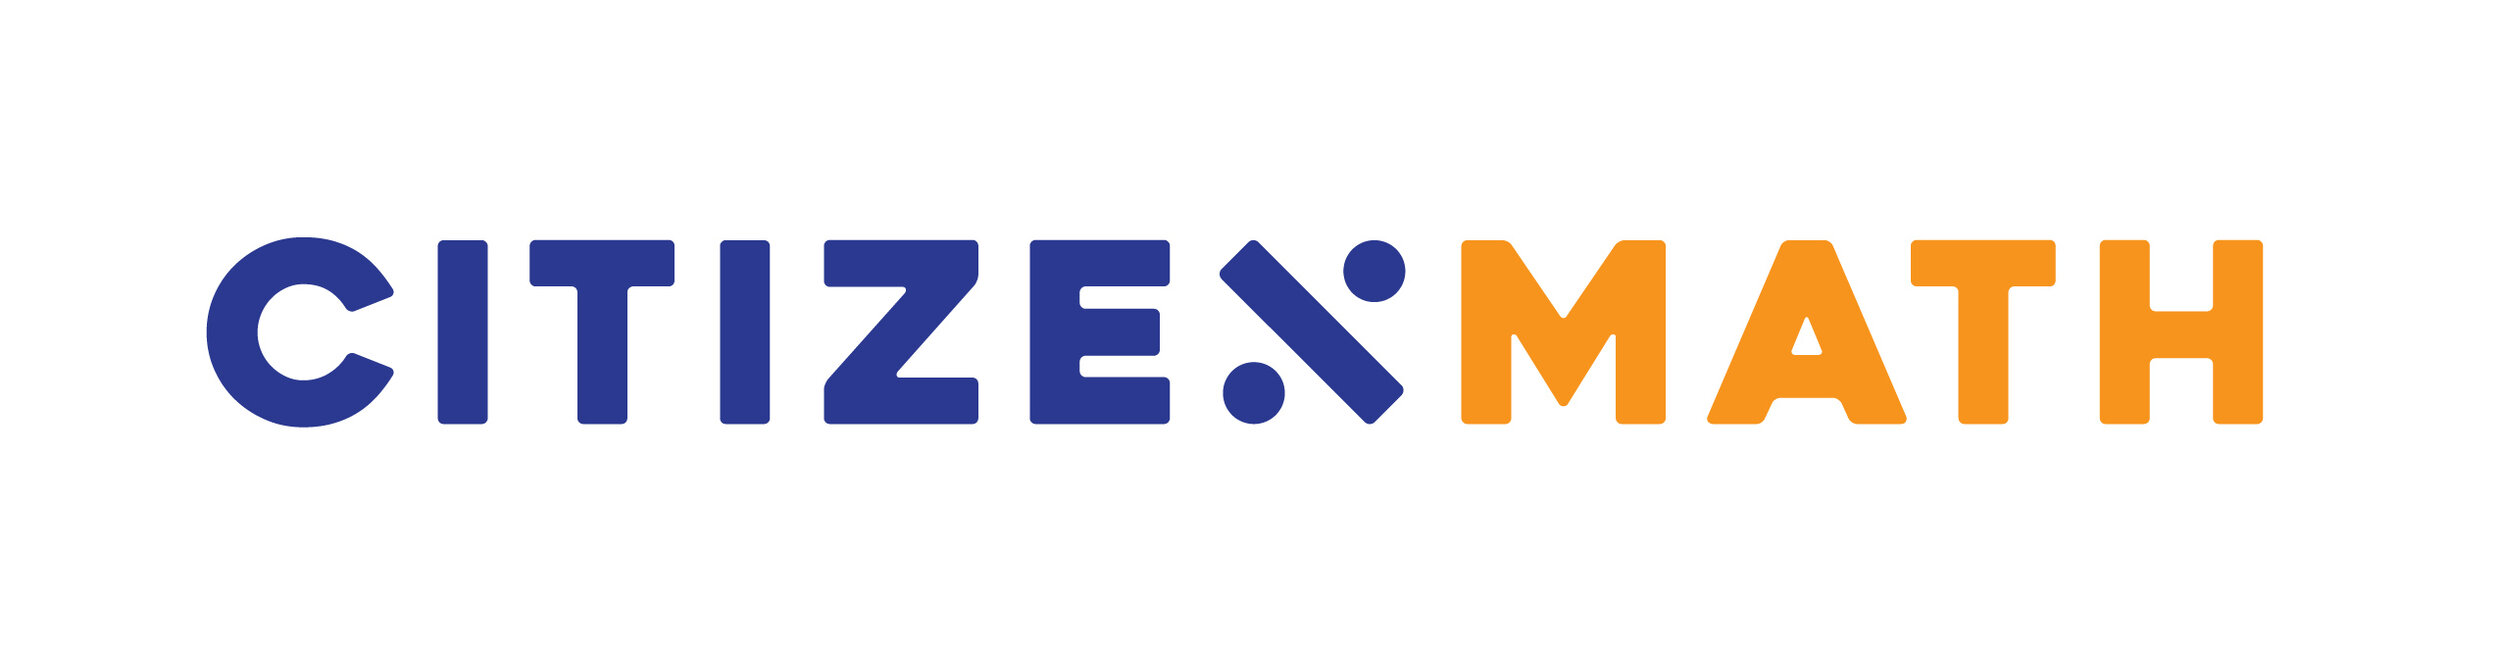 CZM Logos-01.jpg